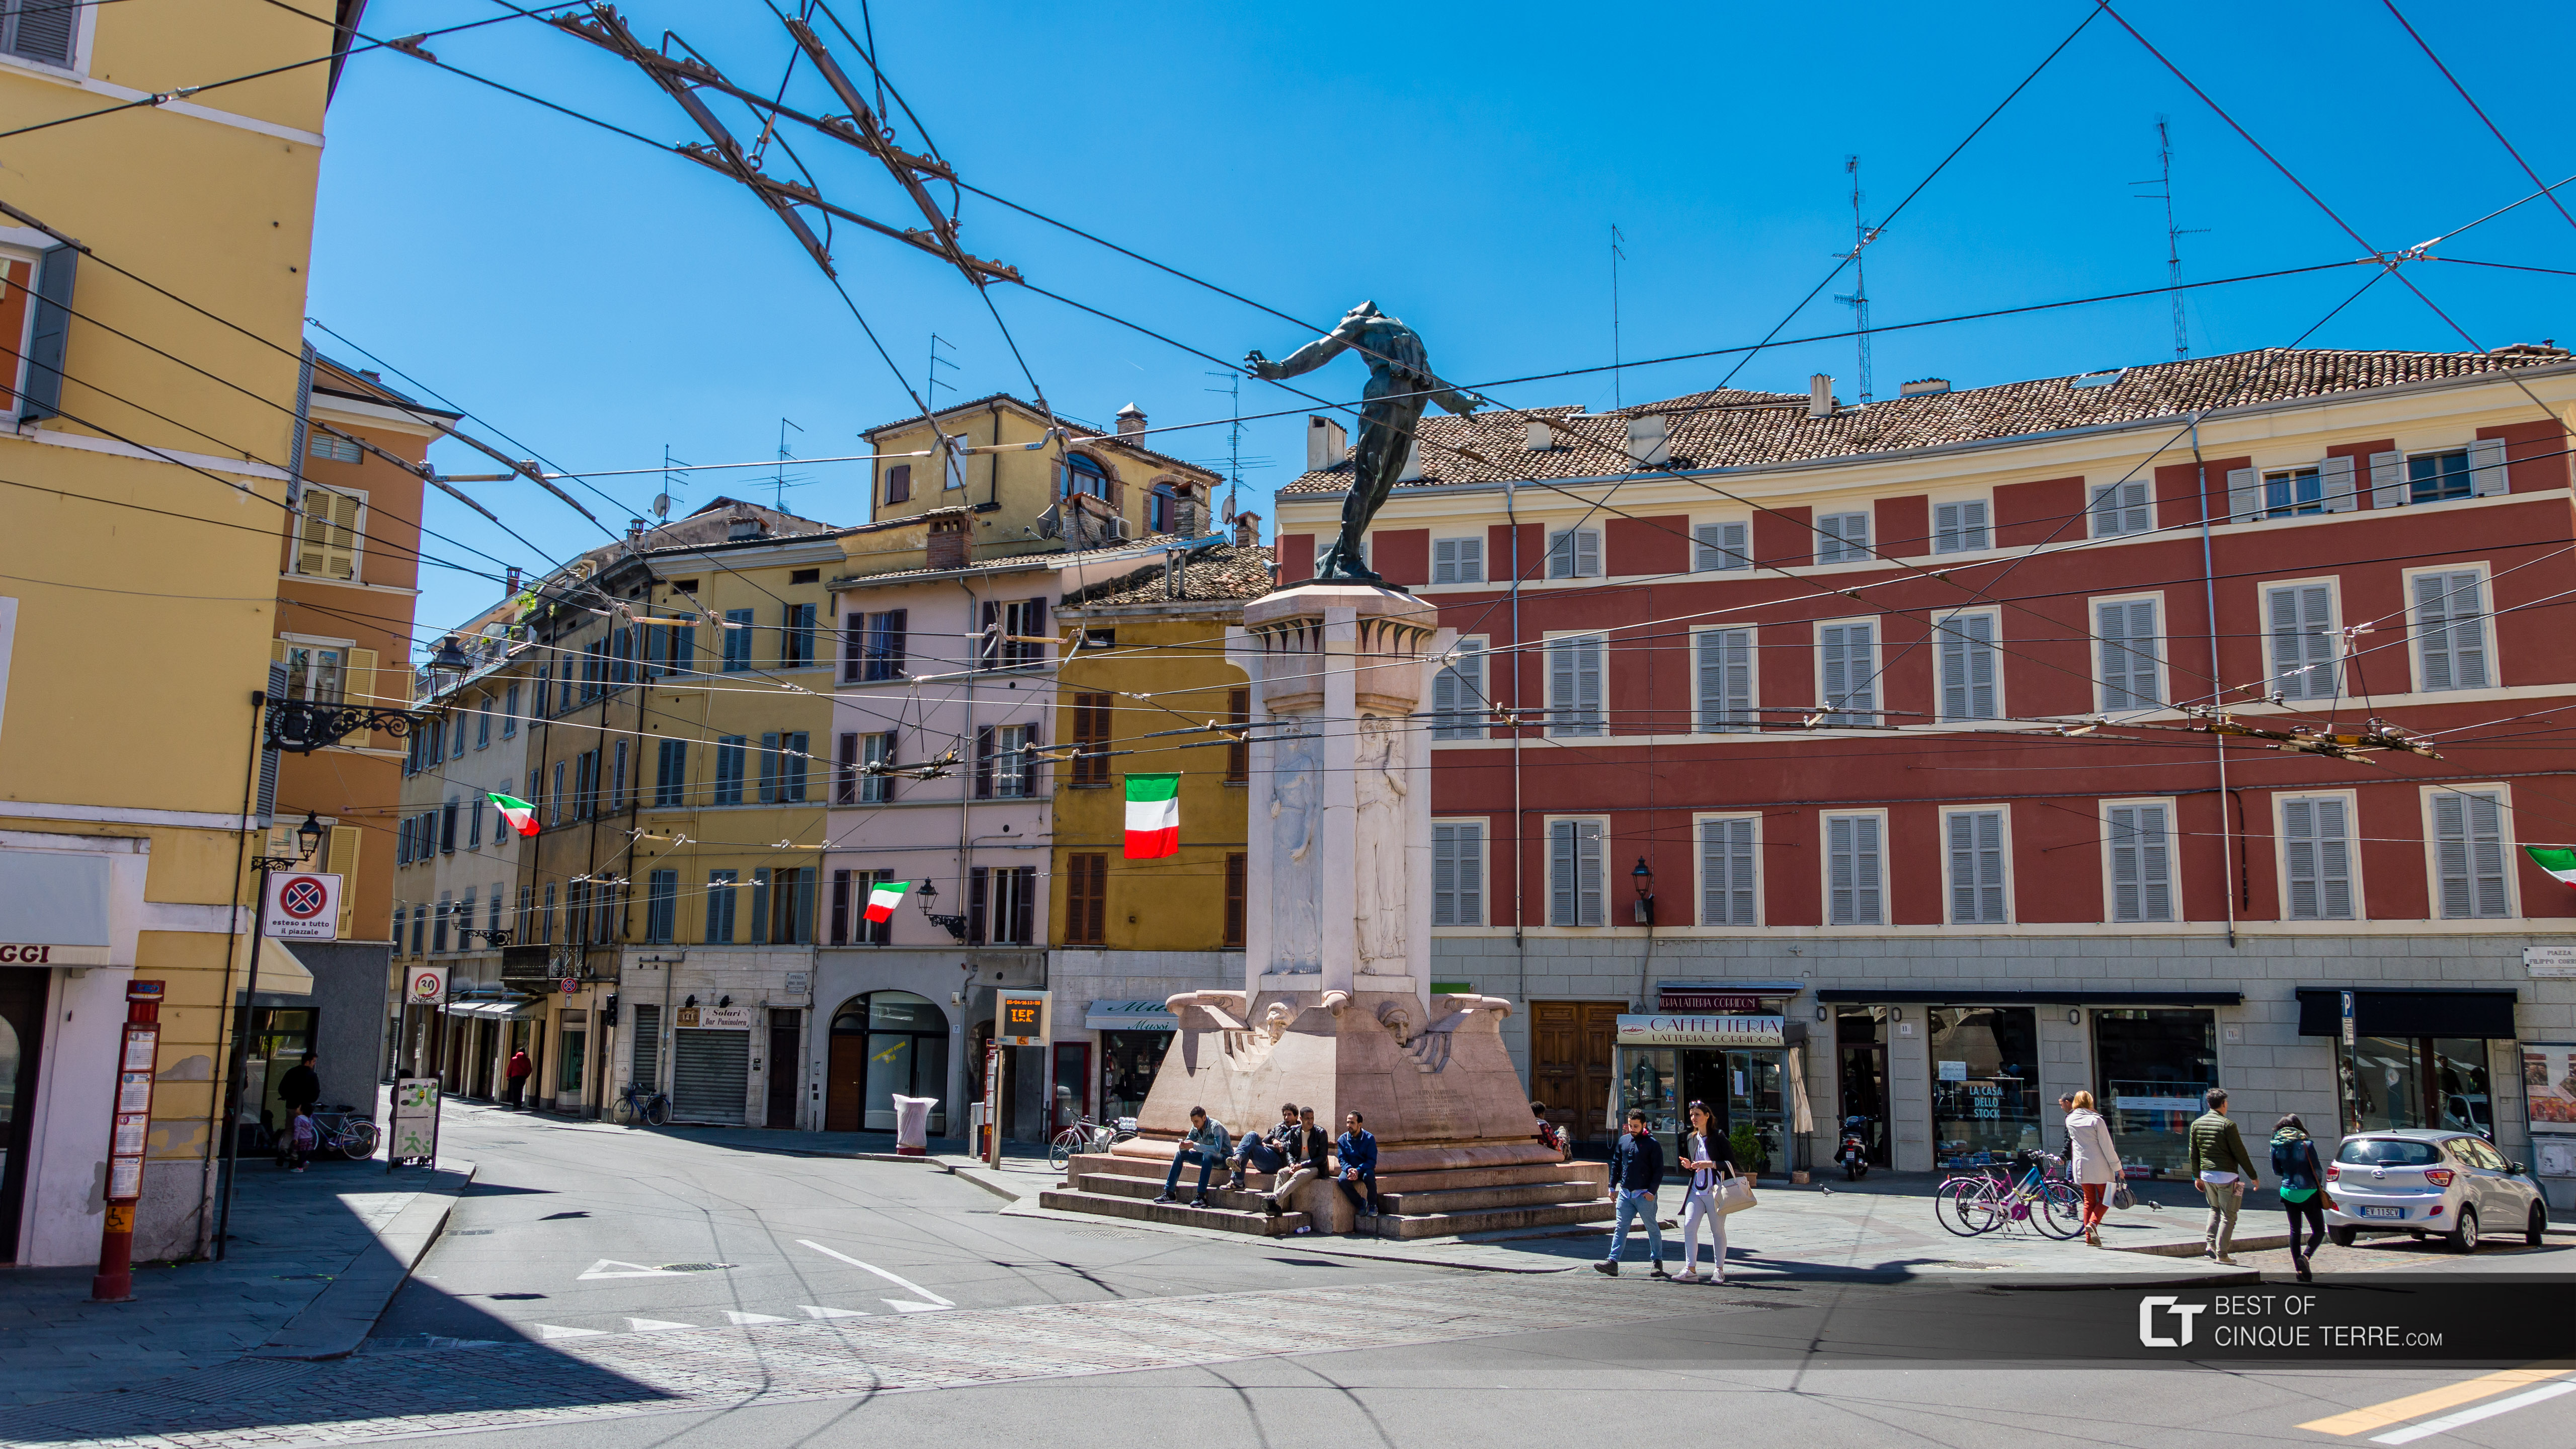 Piazza Filippo Corridoni, Parma, Italy